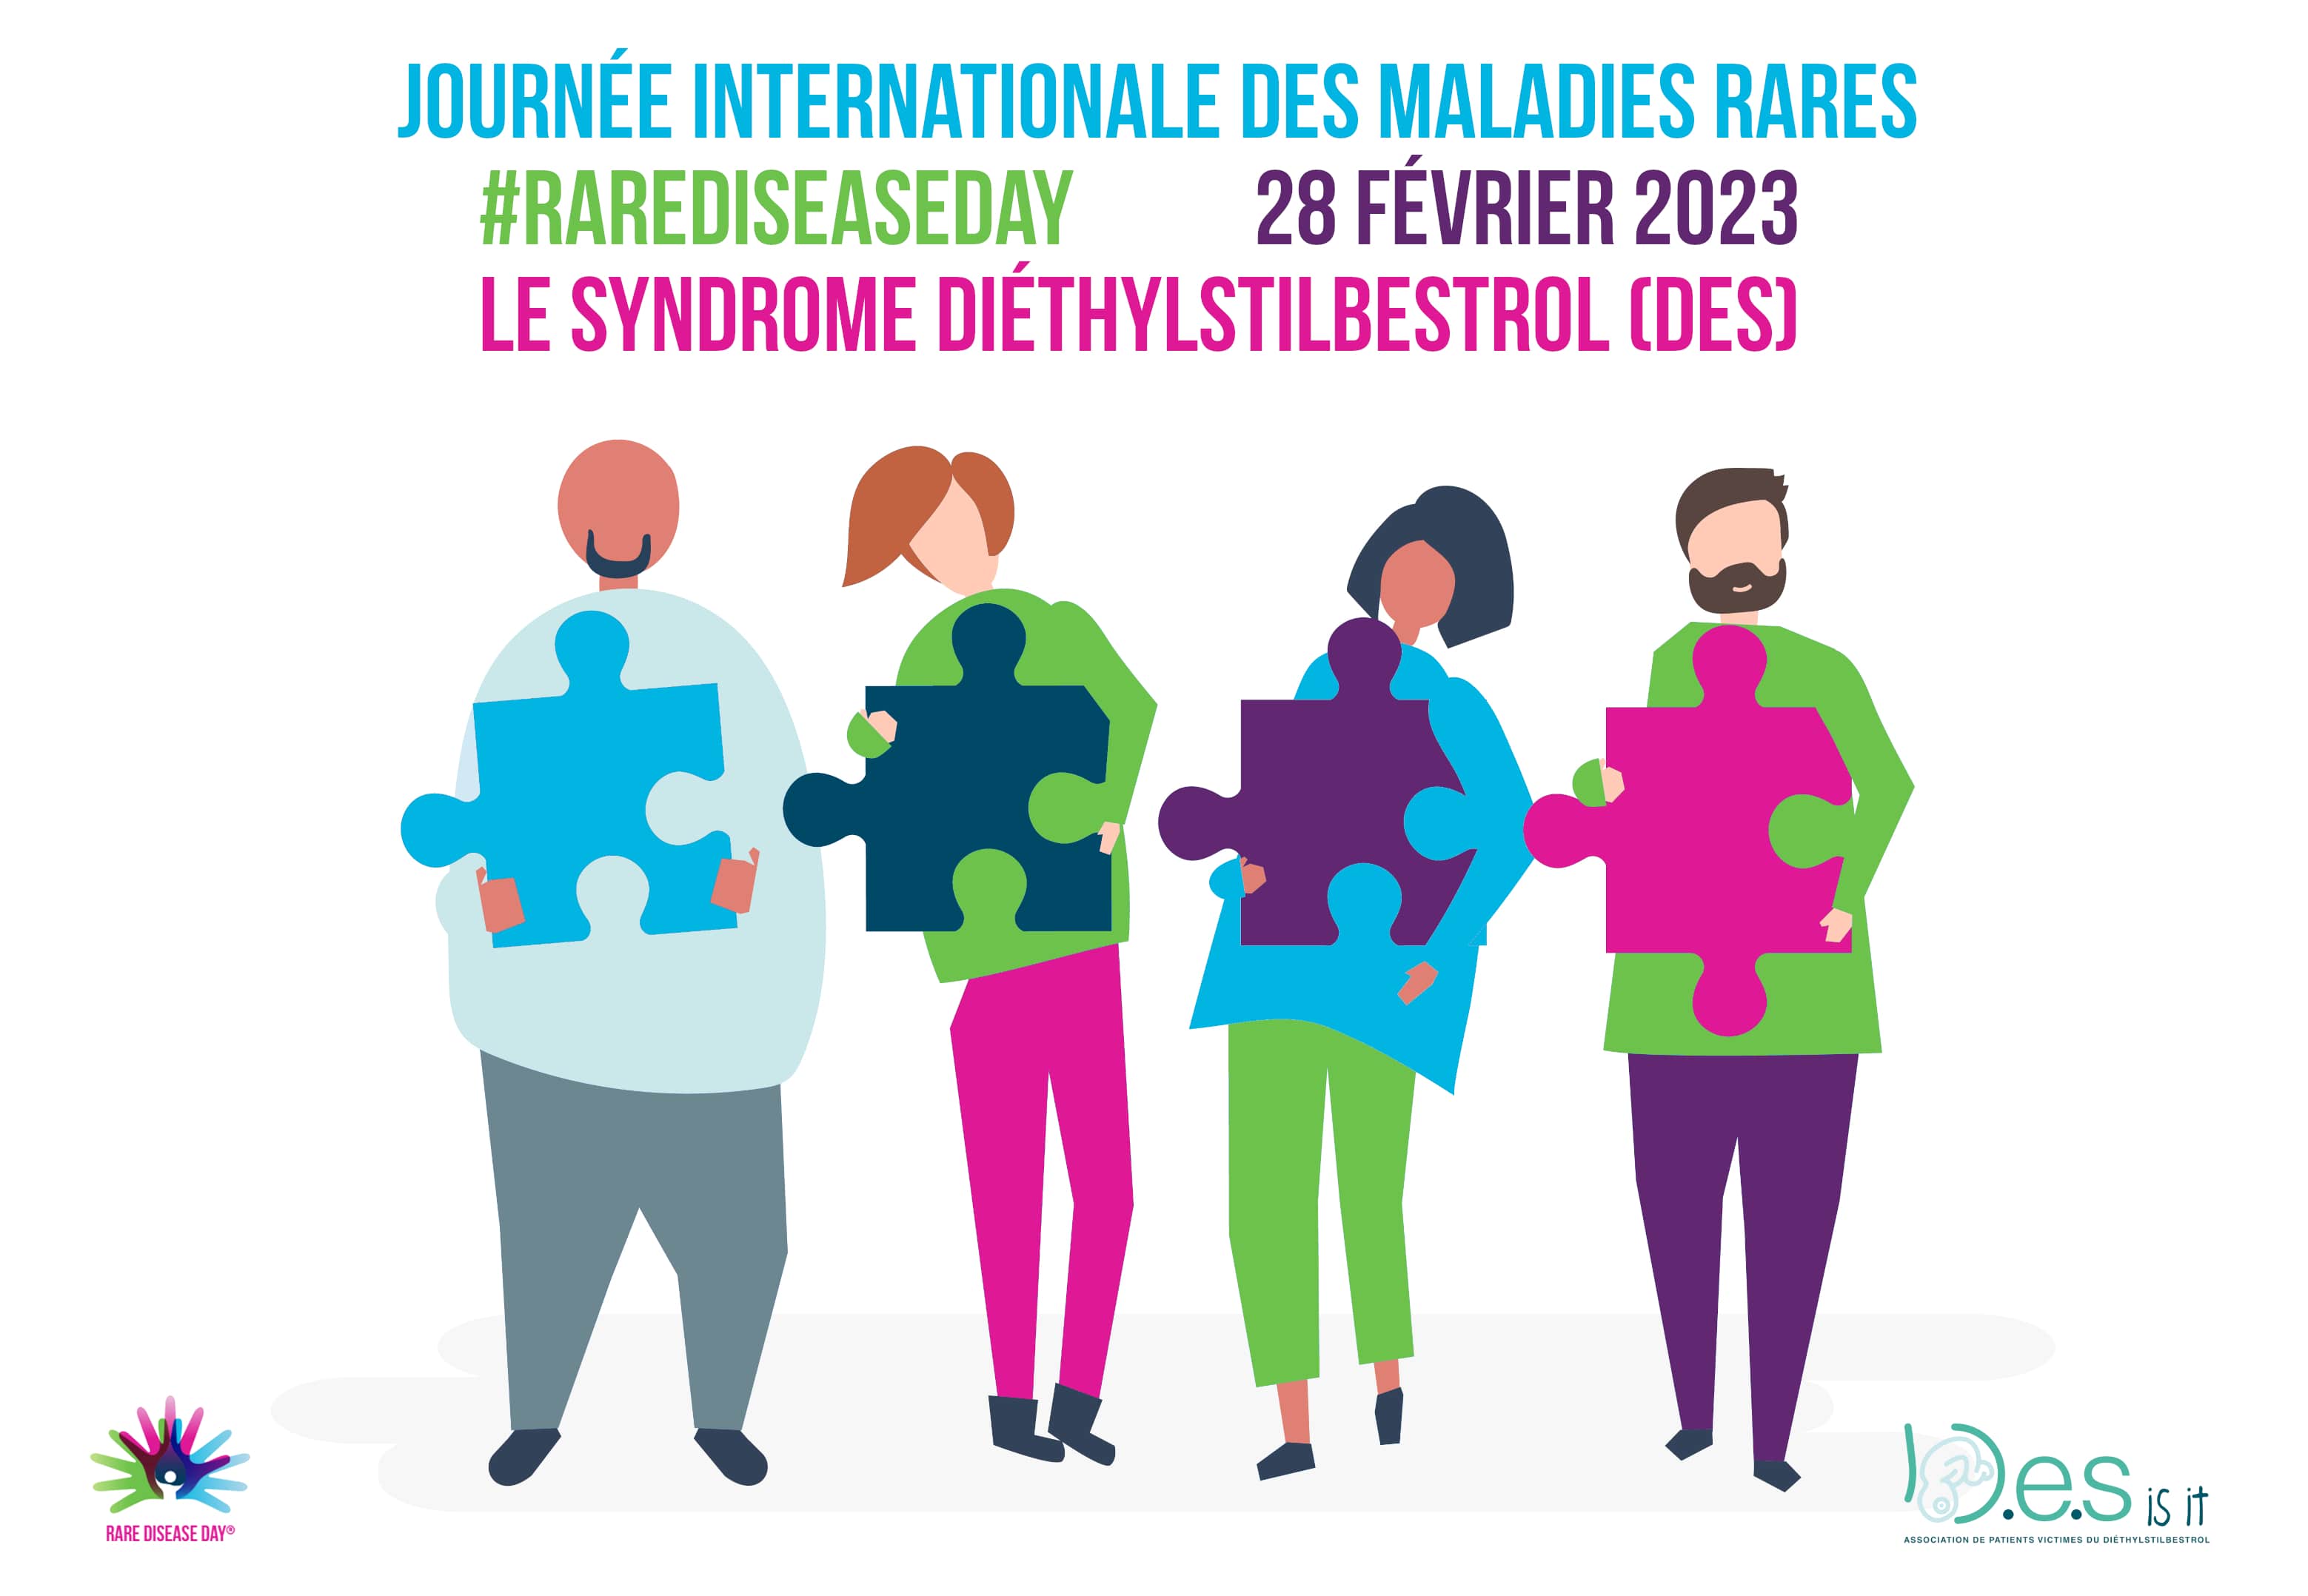 Journée internationale dédiée aux maladies rares : le syndrome diéthylstilbestrol